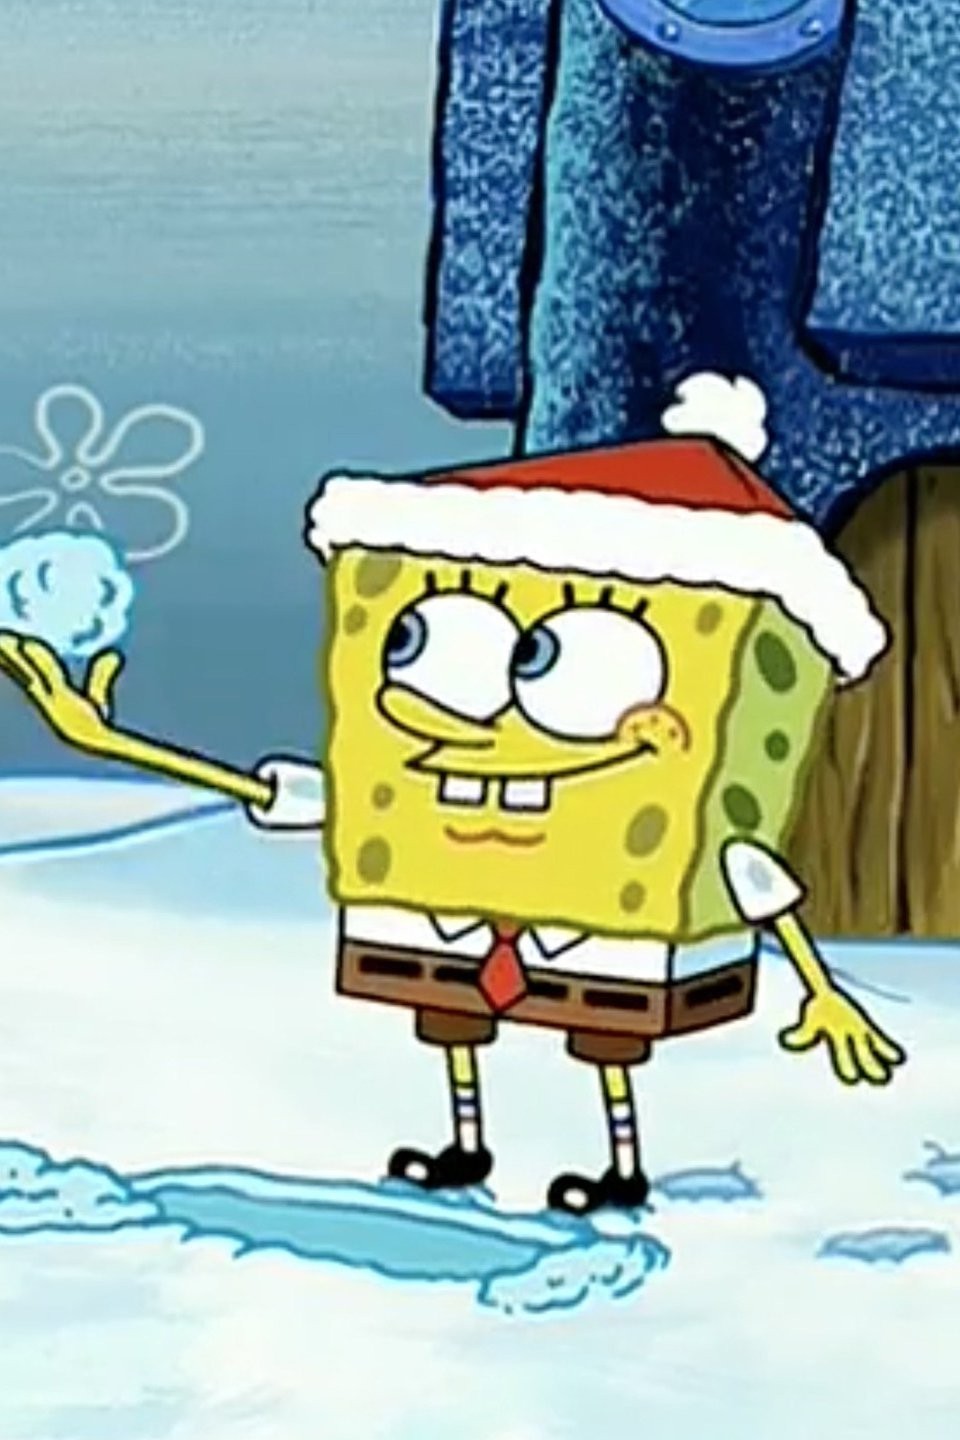 spongebob snowball effect